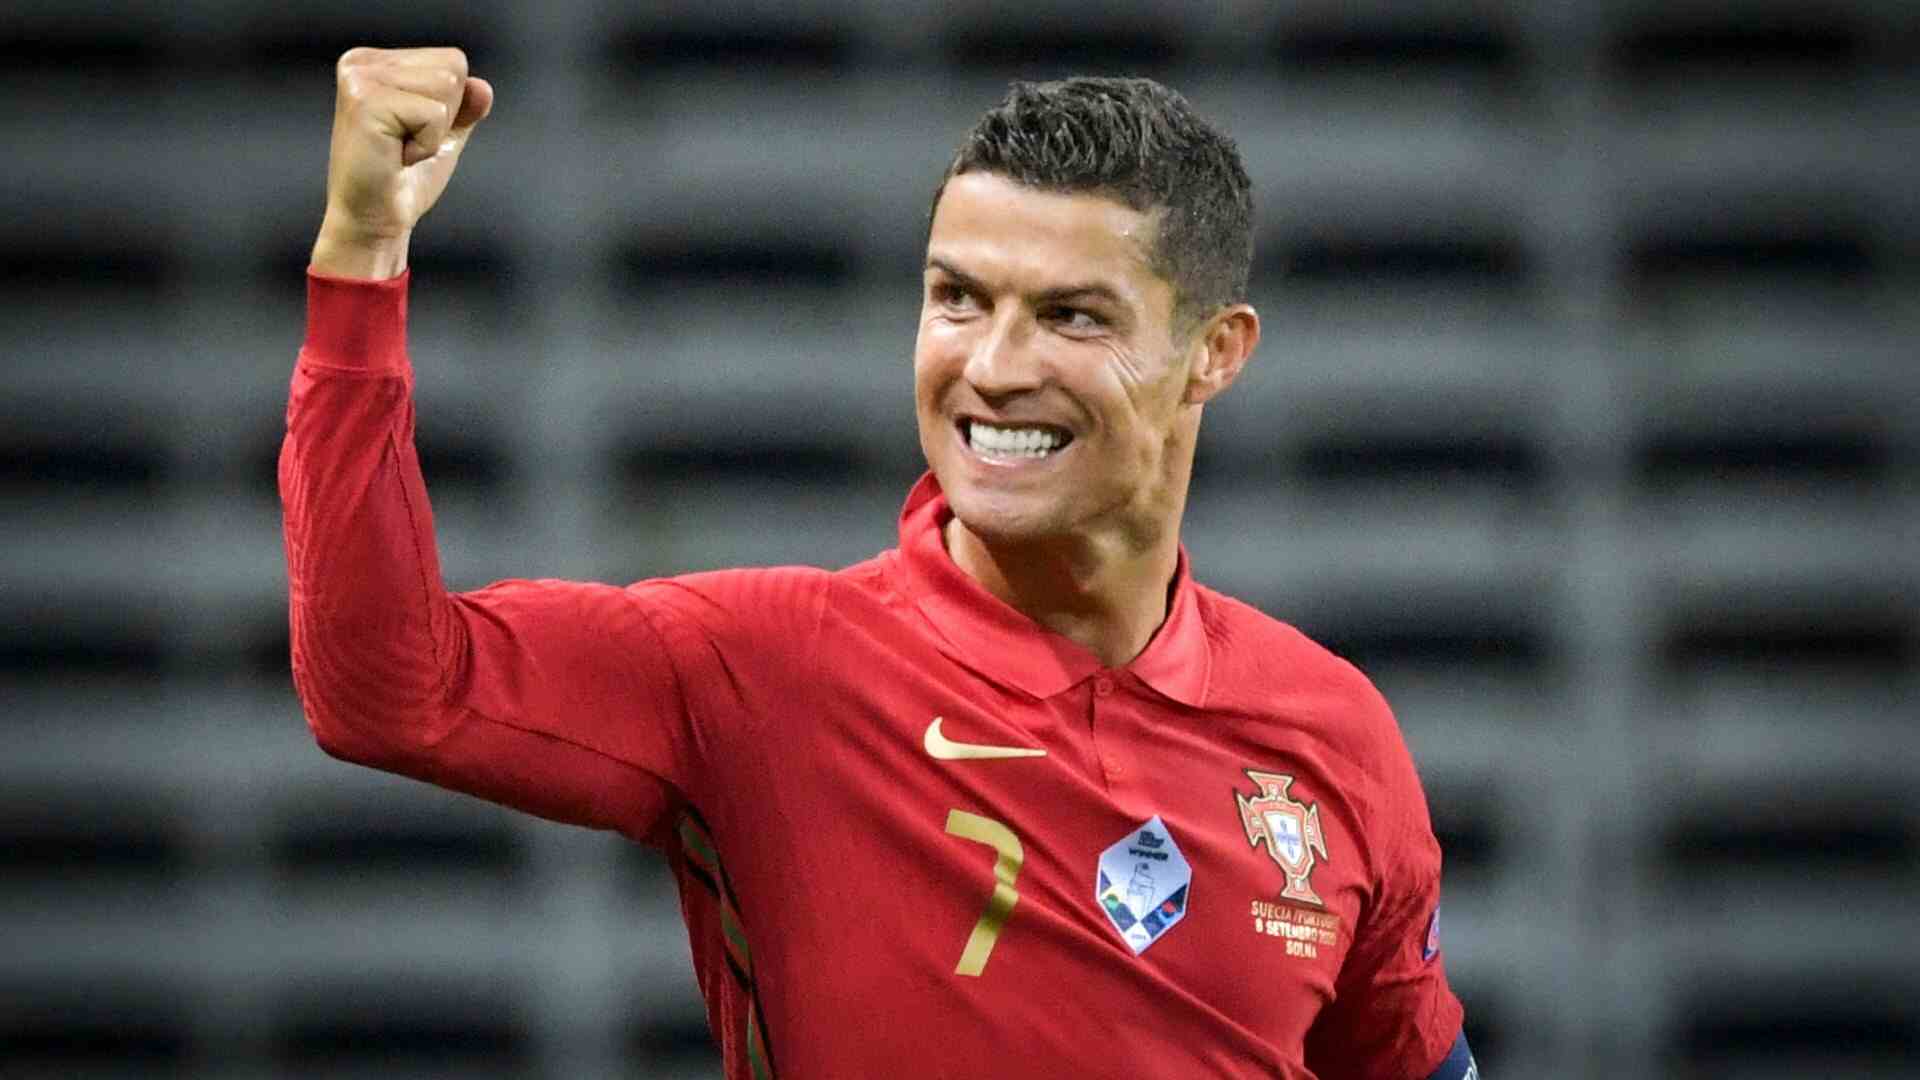 Clamoroso dal Portogallo, Ronaldo ha minacciato di lasciare il Qatar. La Federazione però smentisce